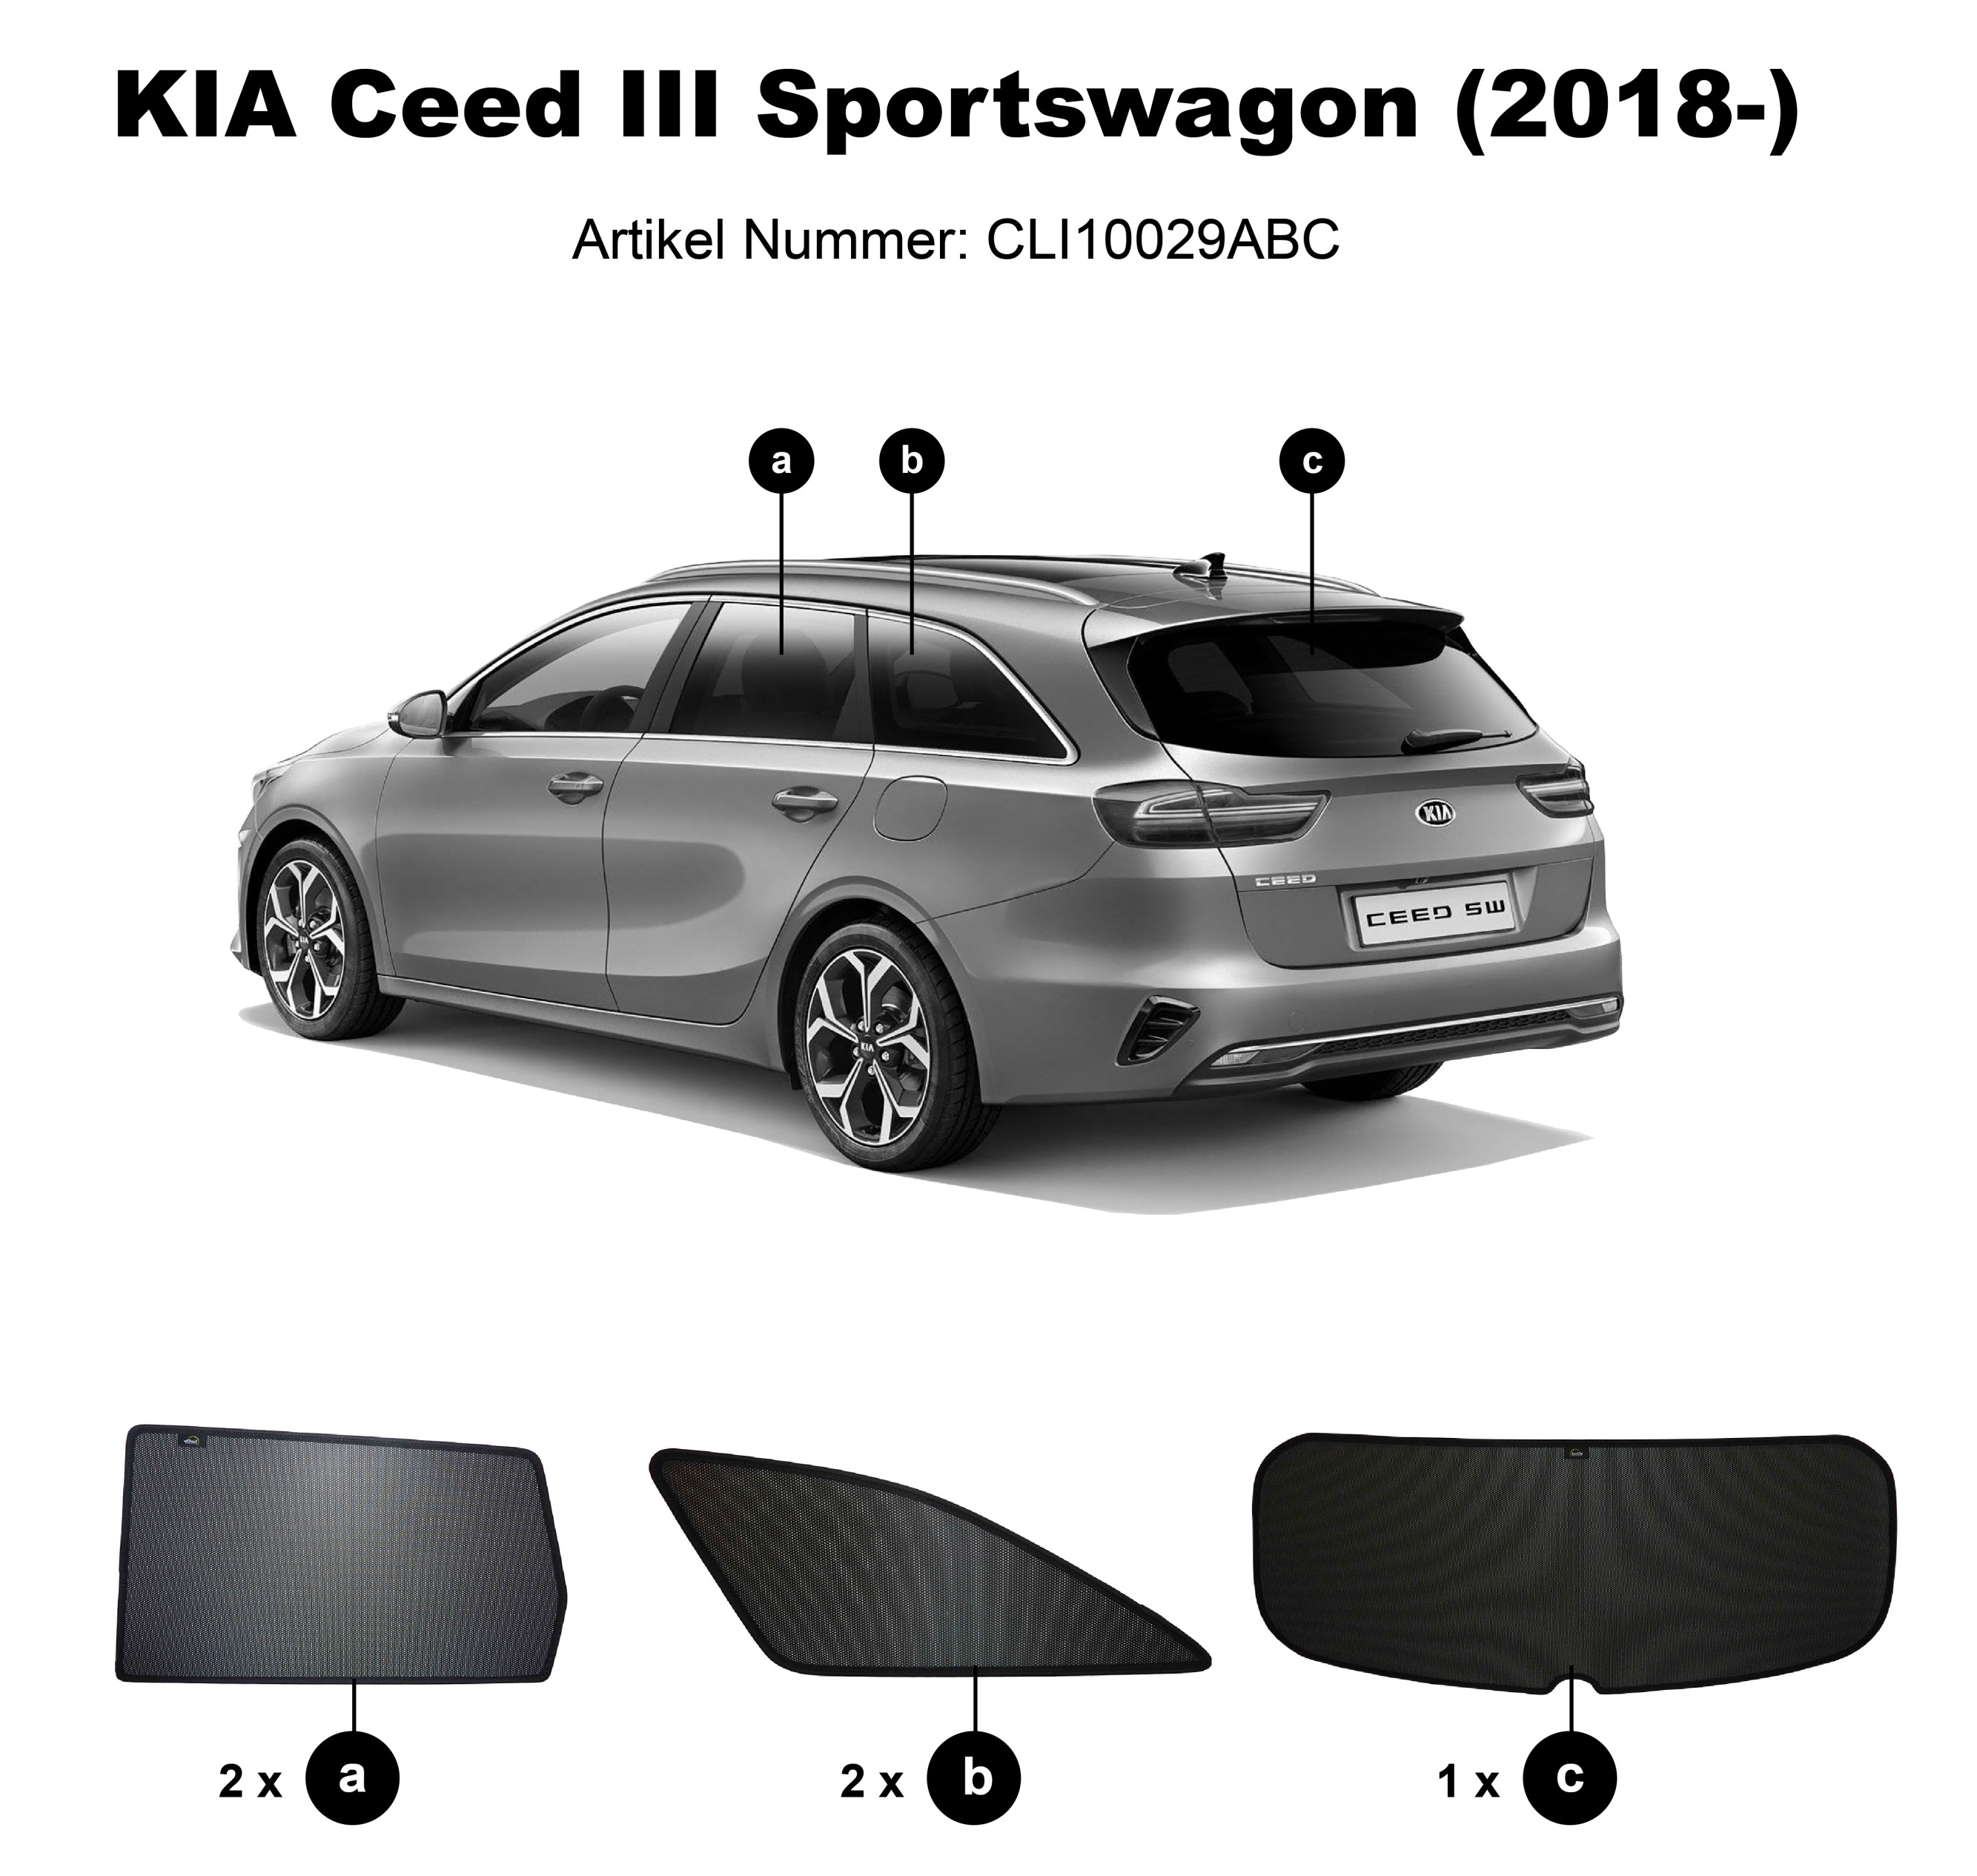 https://www.sonnenschutz-pkw.de/images/product_images/original_images/Kia-Ceed-Sportswagon-CLI10029ABC.png